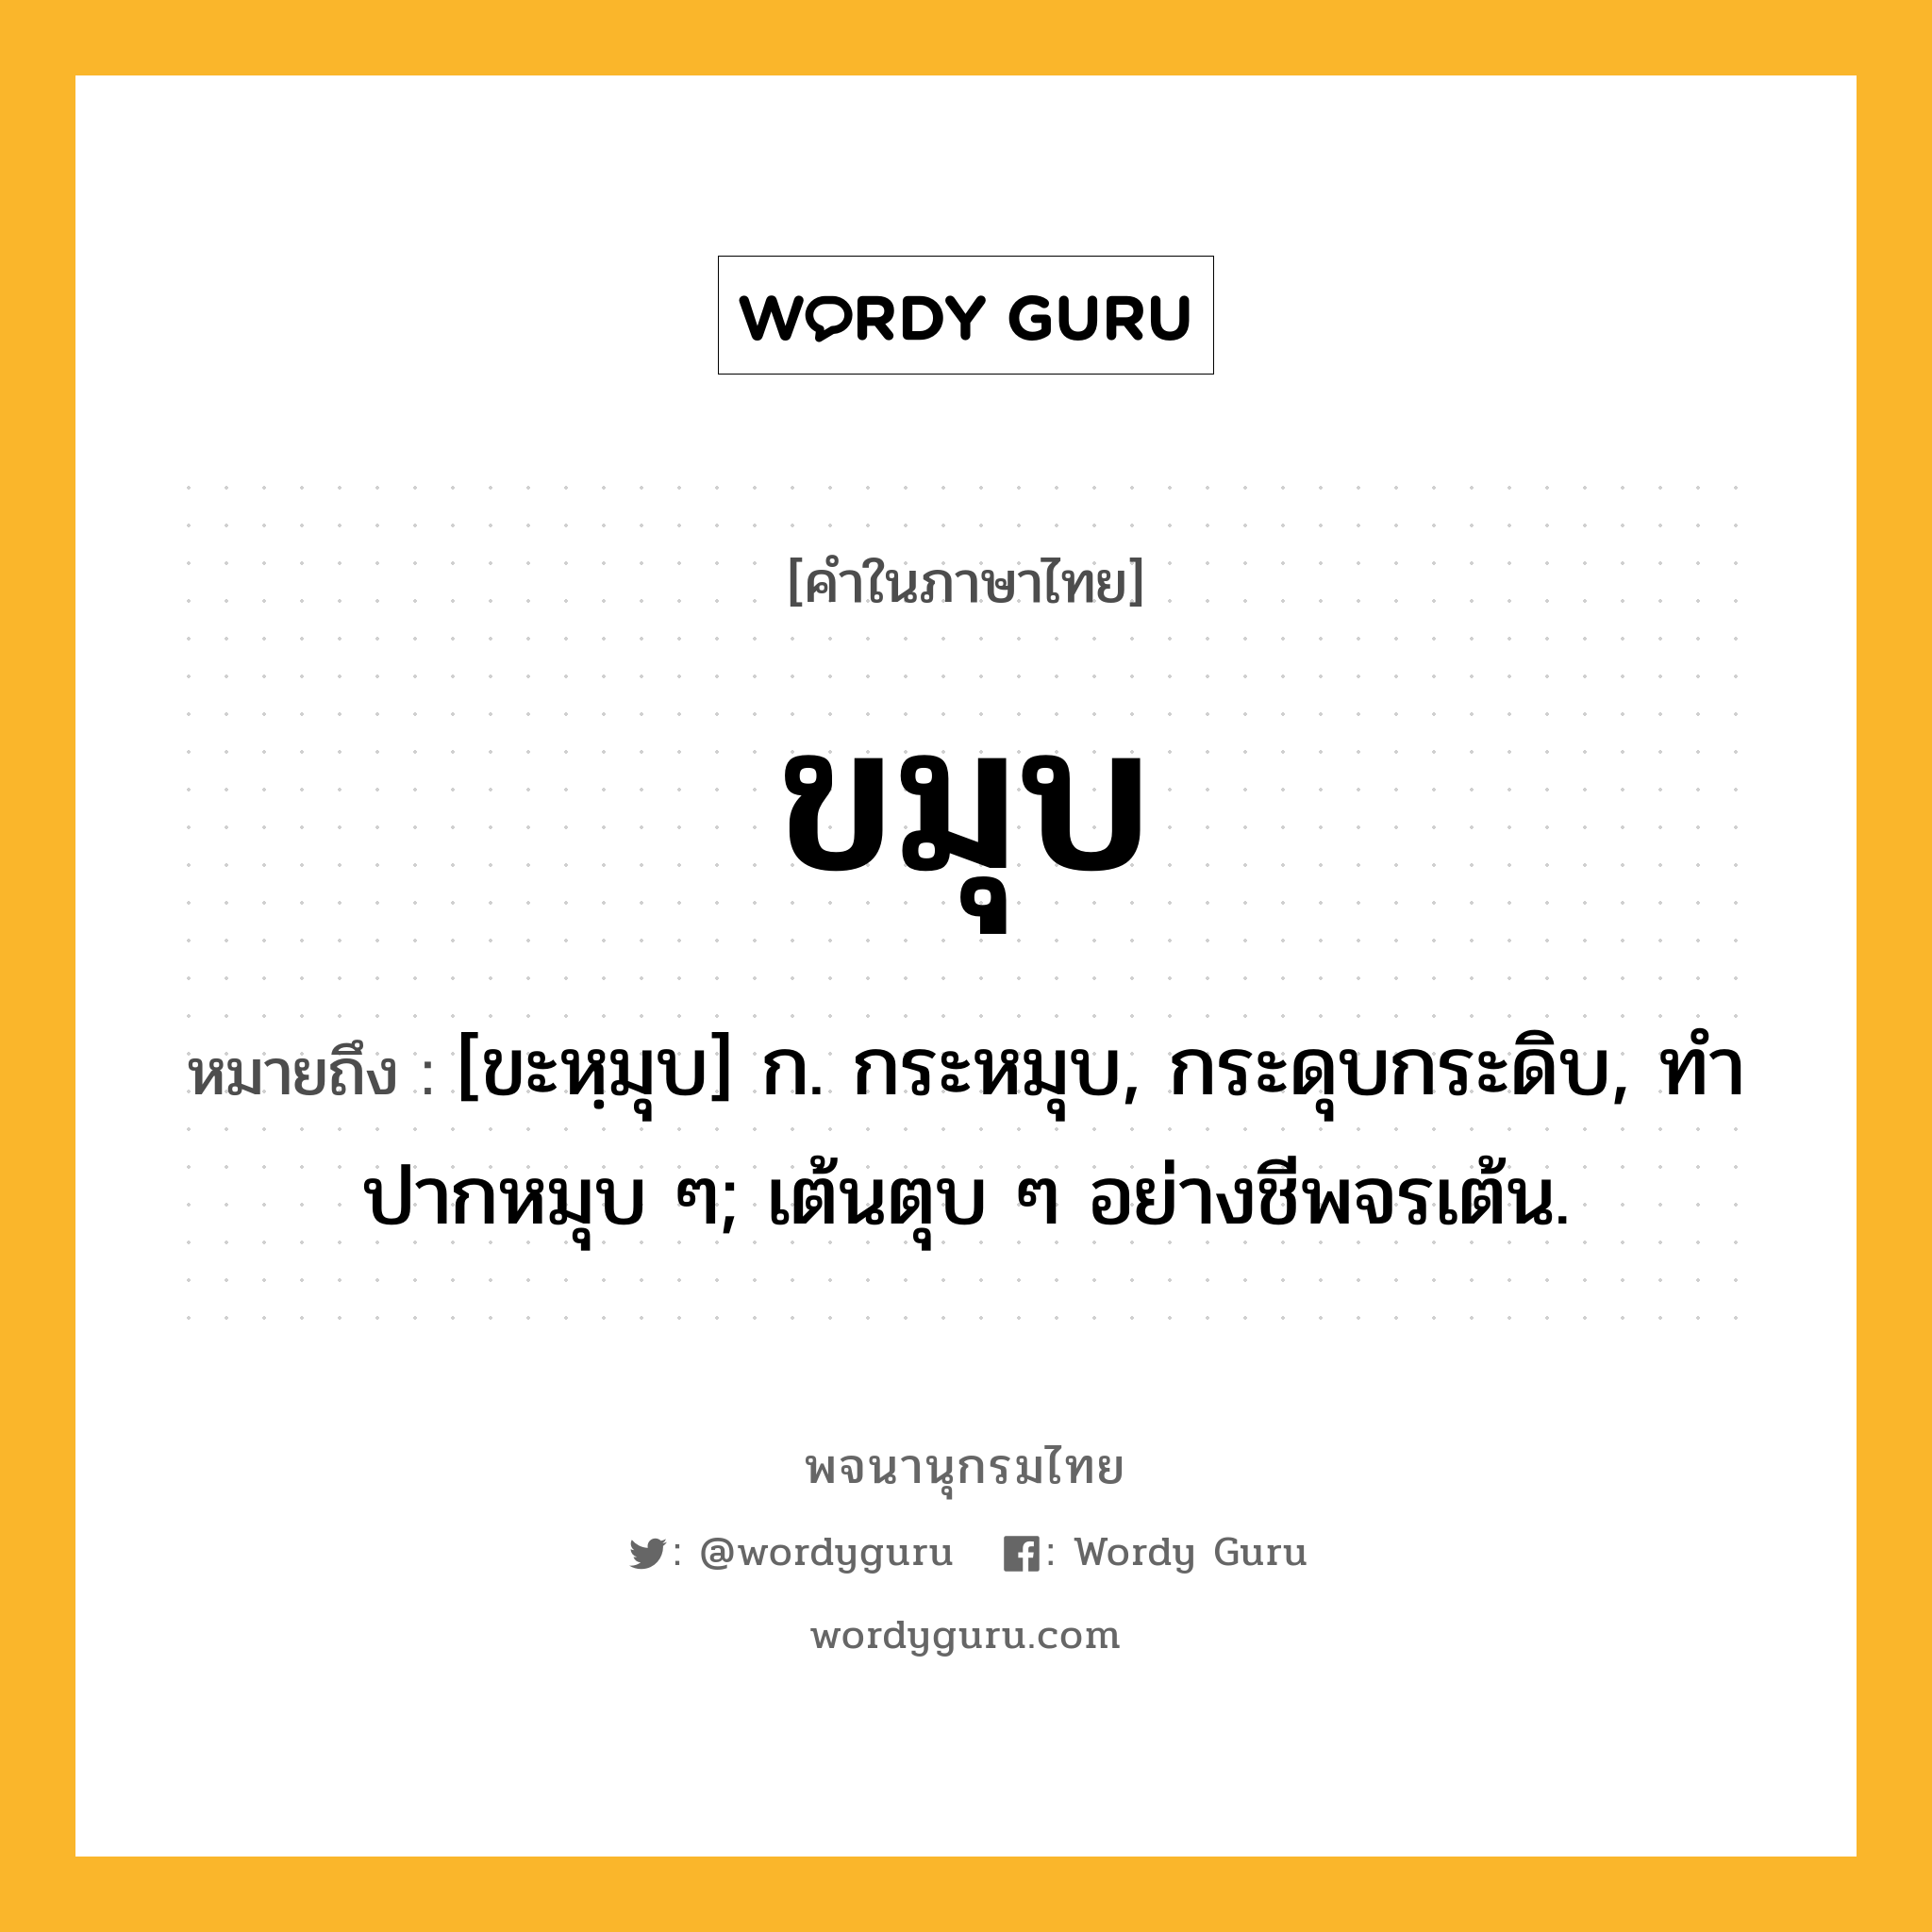 ขมุบ ความหมาย หมายถึงอะไร?, คำในภาษาไทย ขมุบ หมายถึง [ขะหฺมุบ] ก. กระหมุบ, กระดุบกระดิบ, ทําปากหมุบ ๆ; เต้นตุบ ๆ อย่างชีพจรเต้น.